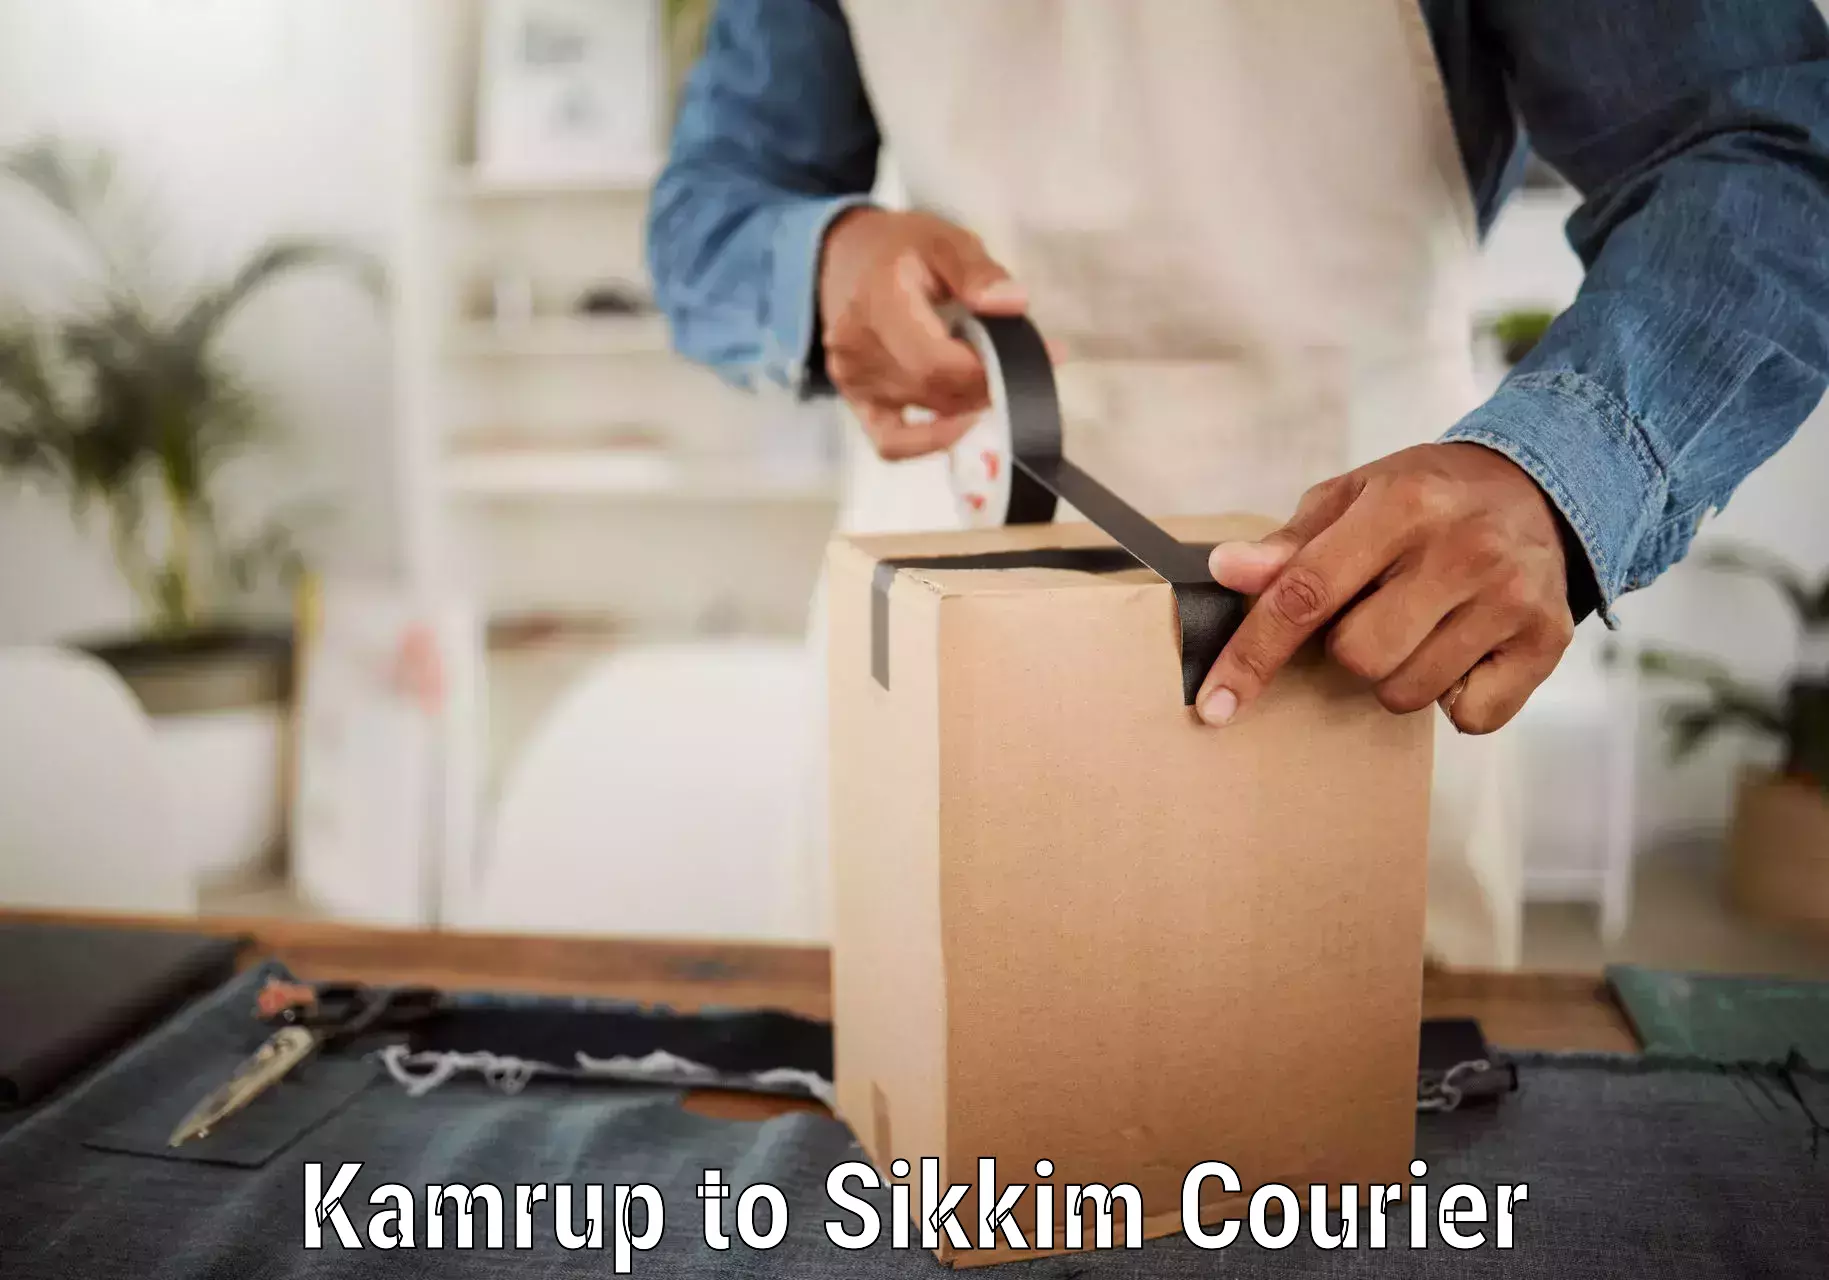 Bulk shipping discounts Kamrup to Gangtok